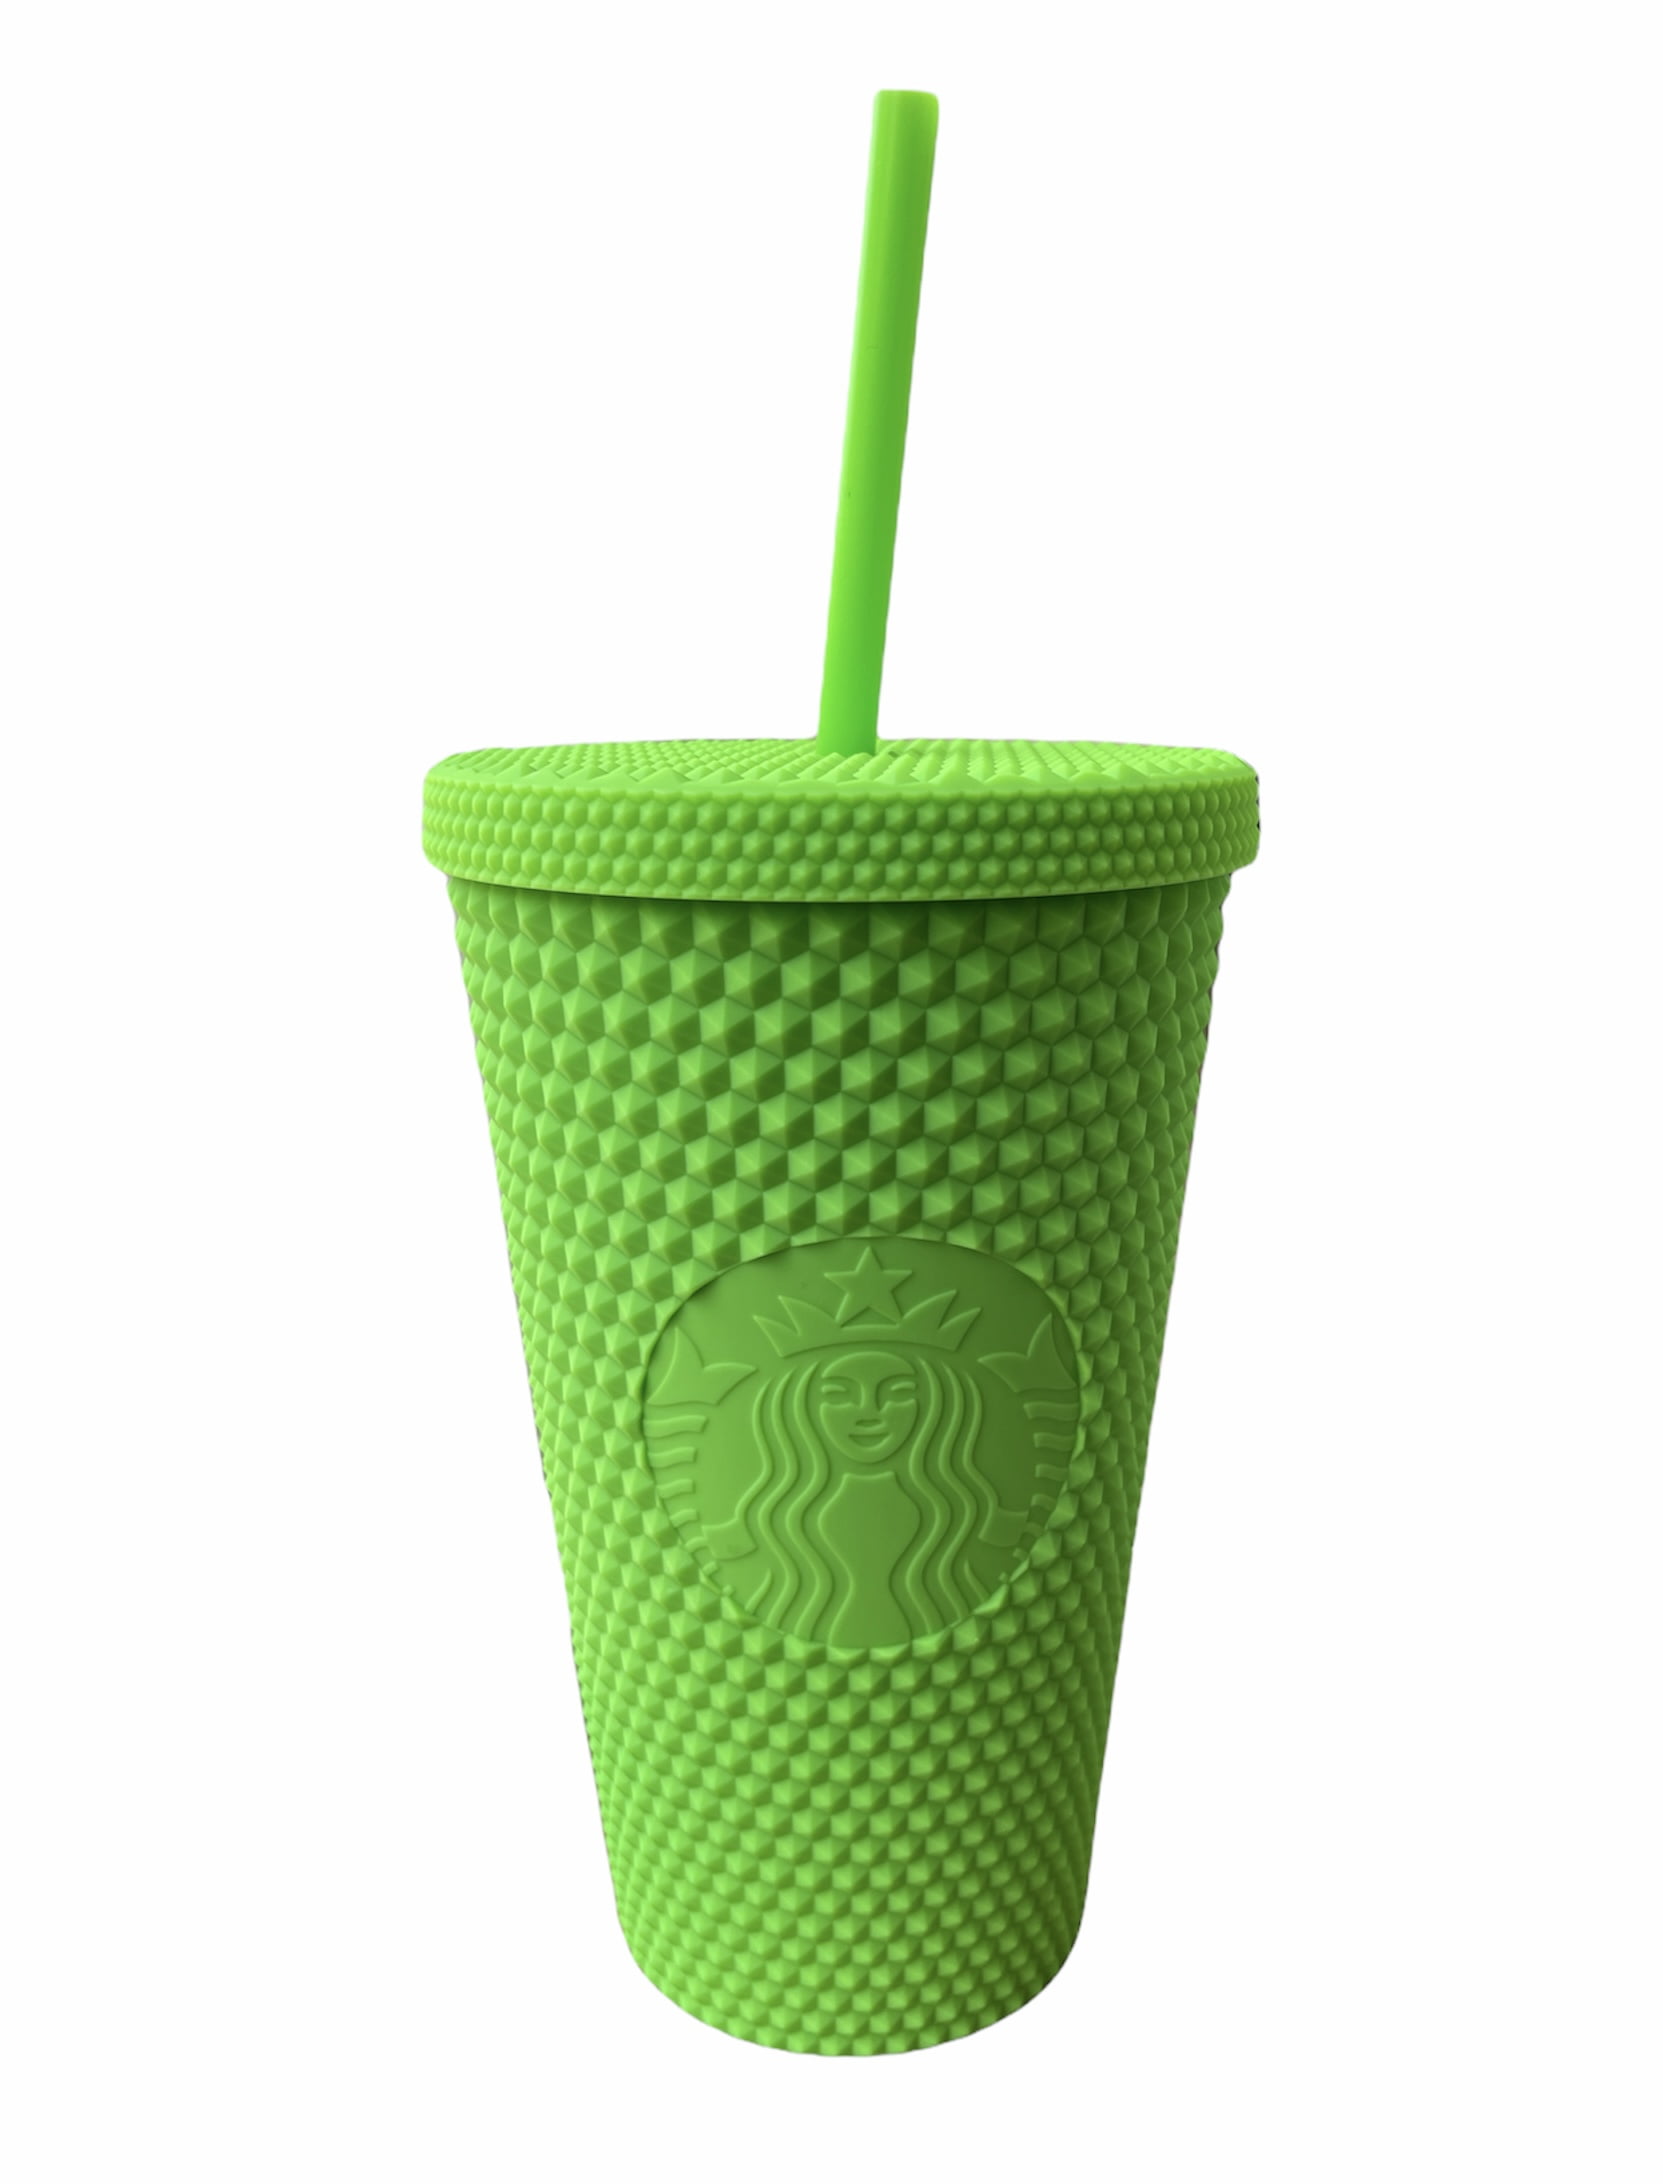 Starbucks Fall 2021 Dark Green Glass Mottled Tumbler 18oz Free Shipping!⭐️ 